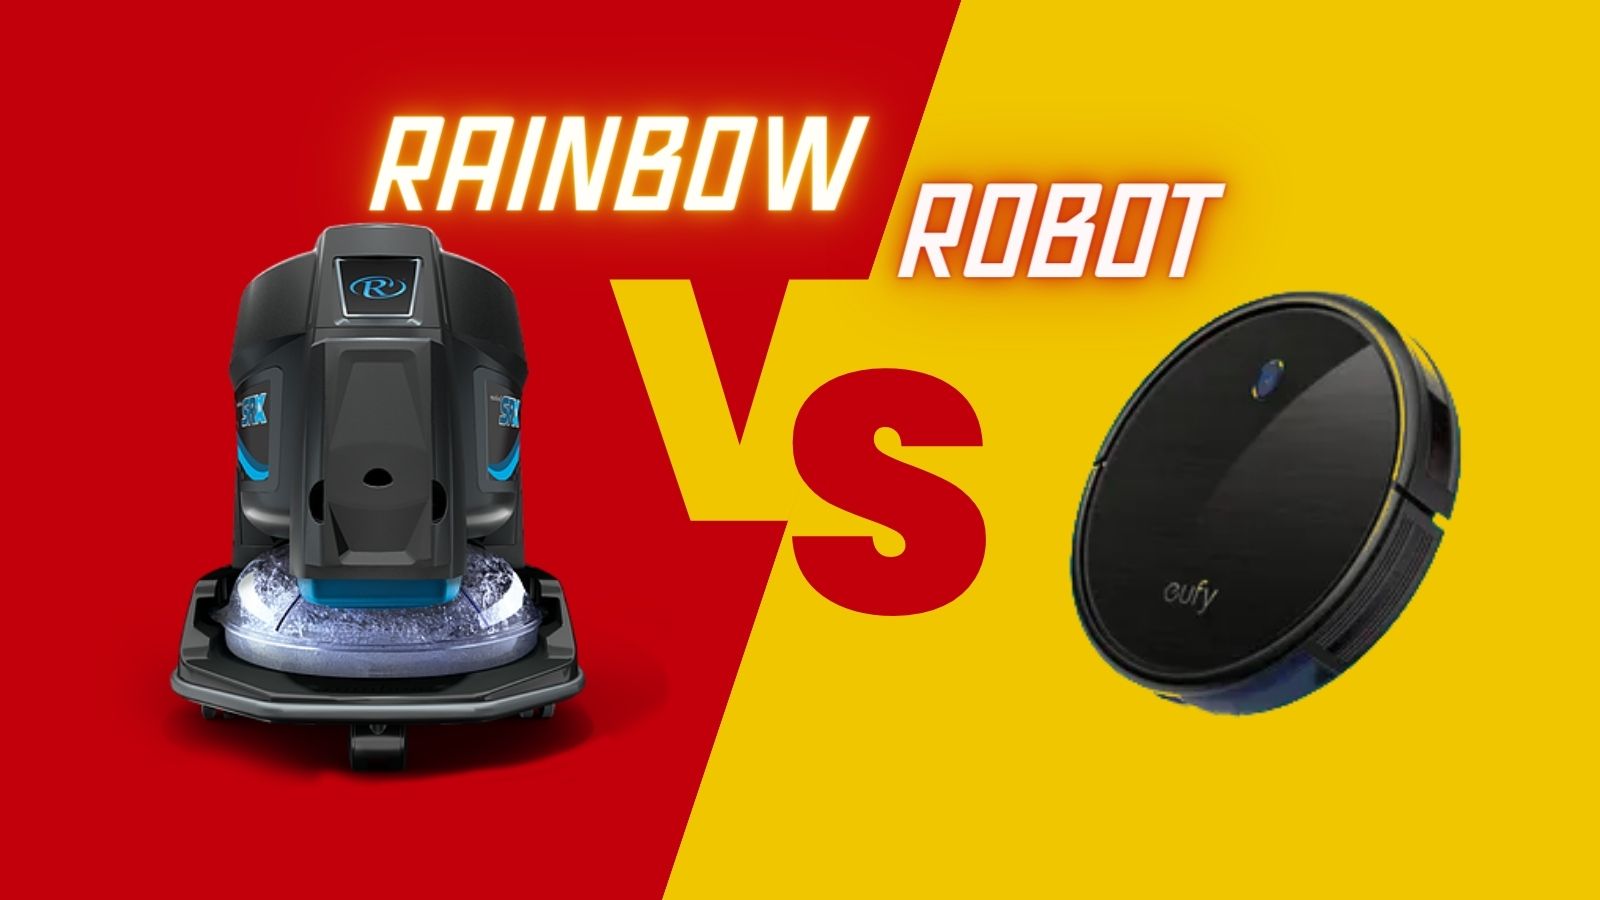 Aspirador Rainbow ou Robot: 5 questões que ajudam a escolher melhor